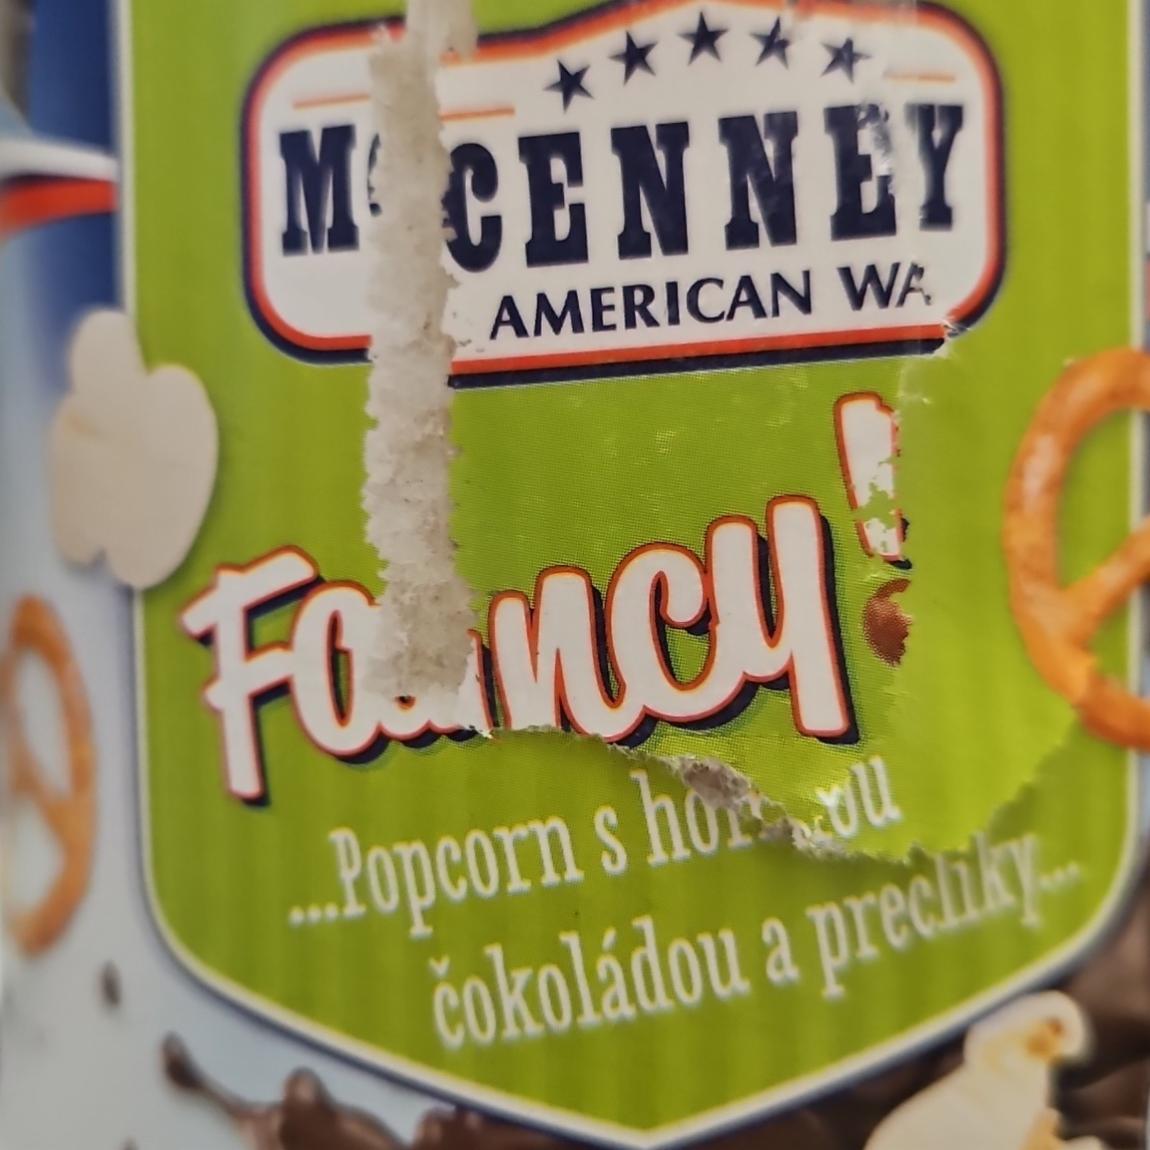 Fotografie - Fancy! Popcorn s hořkou čokoládou a preclíky McEnnedy American Way